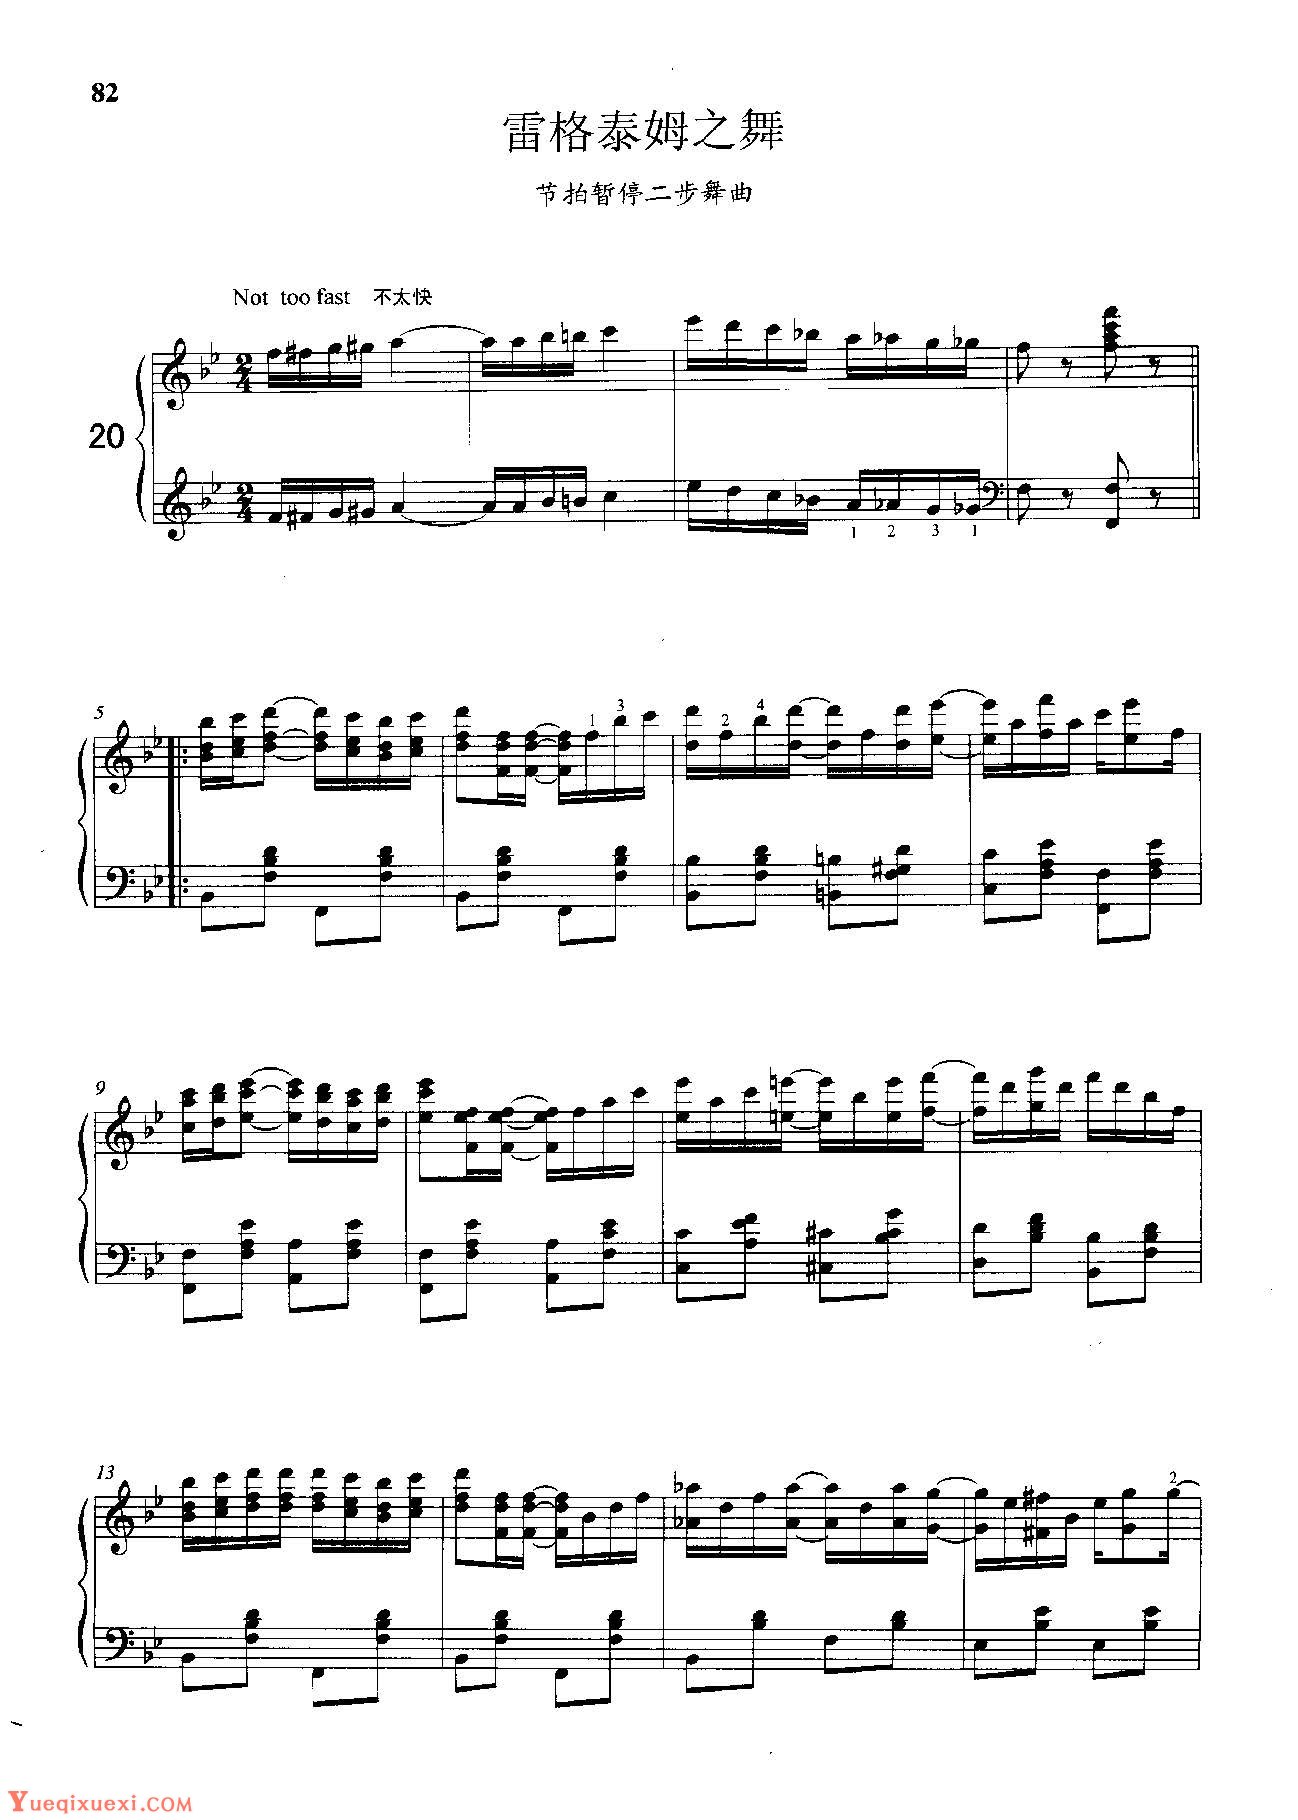 雷格泰姆钢琴乐谱《雷格泰姆之舞》雷格泰姆之王斯科特·乔普林